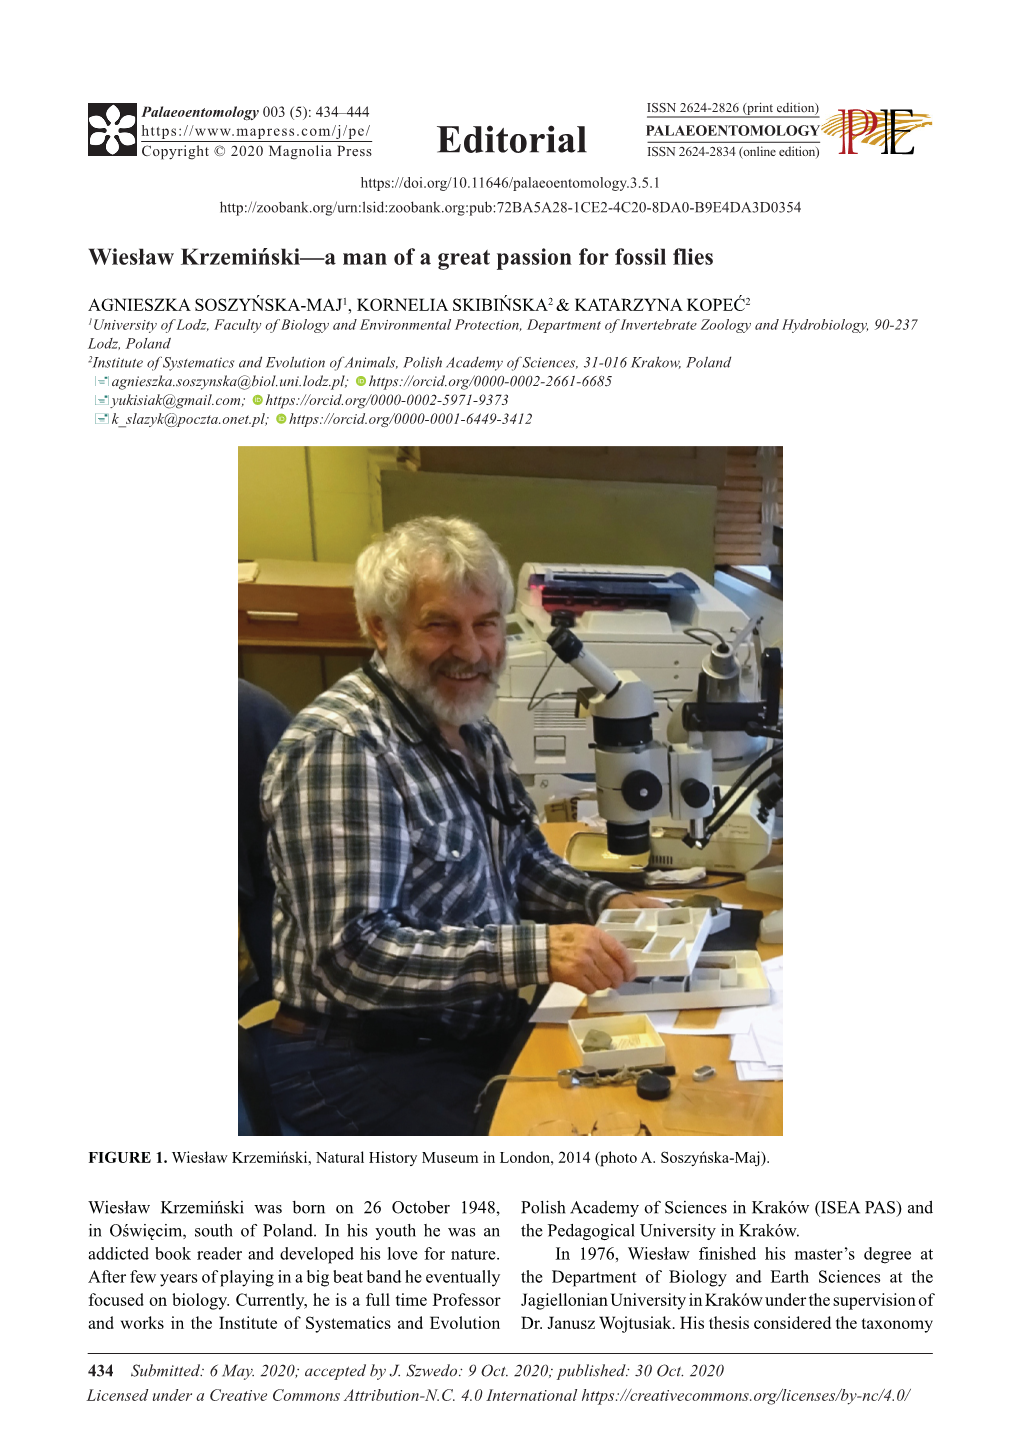 Wiesław Krzemiński—A Man of a Great Passion for Fossil Flies